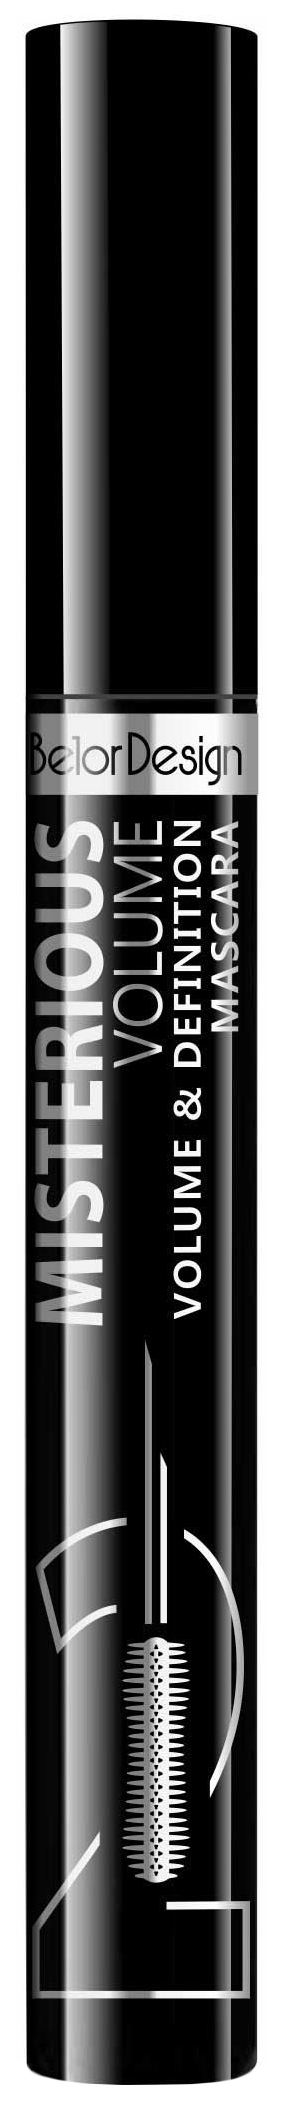 Тушь для ресниц Belor Design Misterious Volume объёмная, разделяющая, чёрная belor design тушь для ресниц объемная overeyes volume